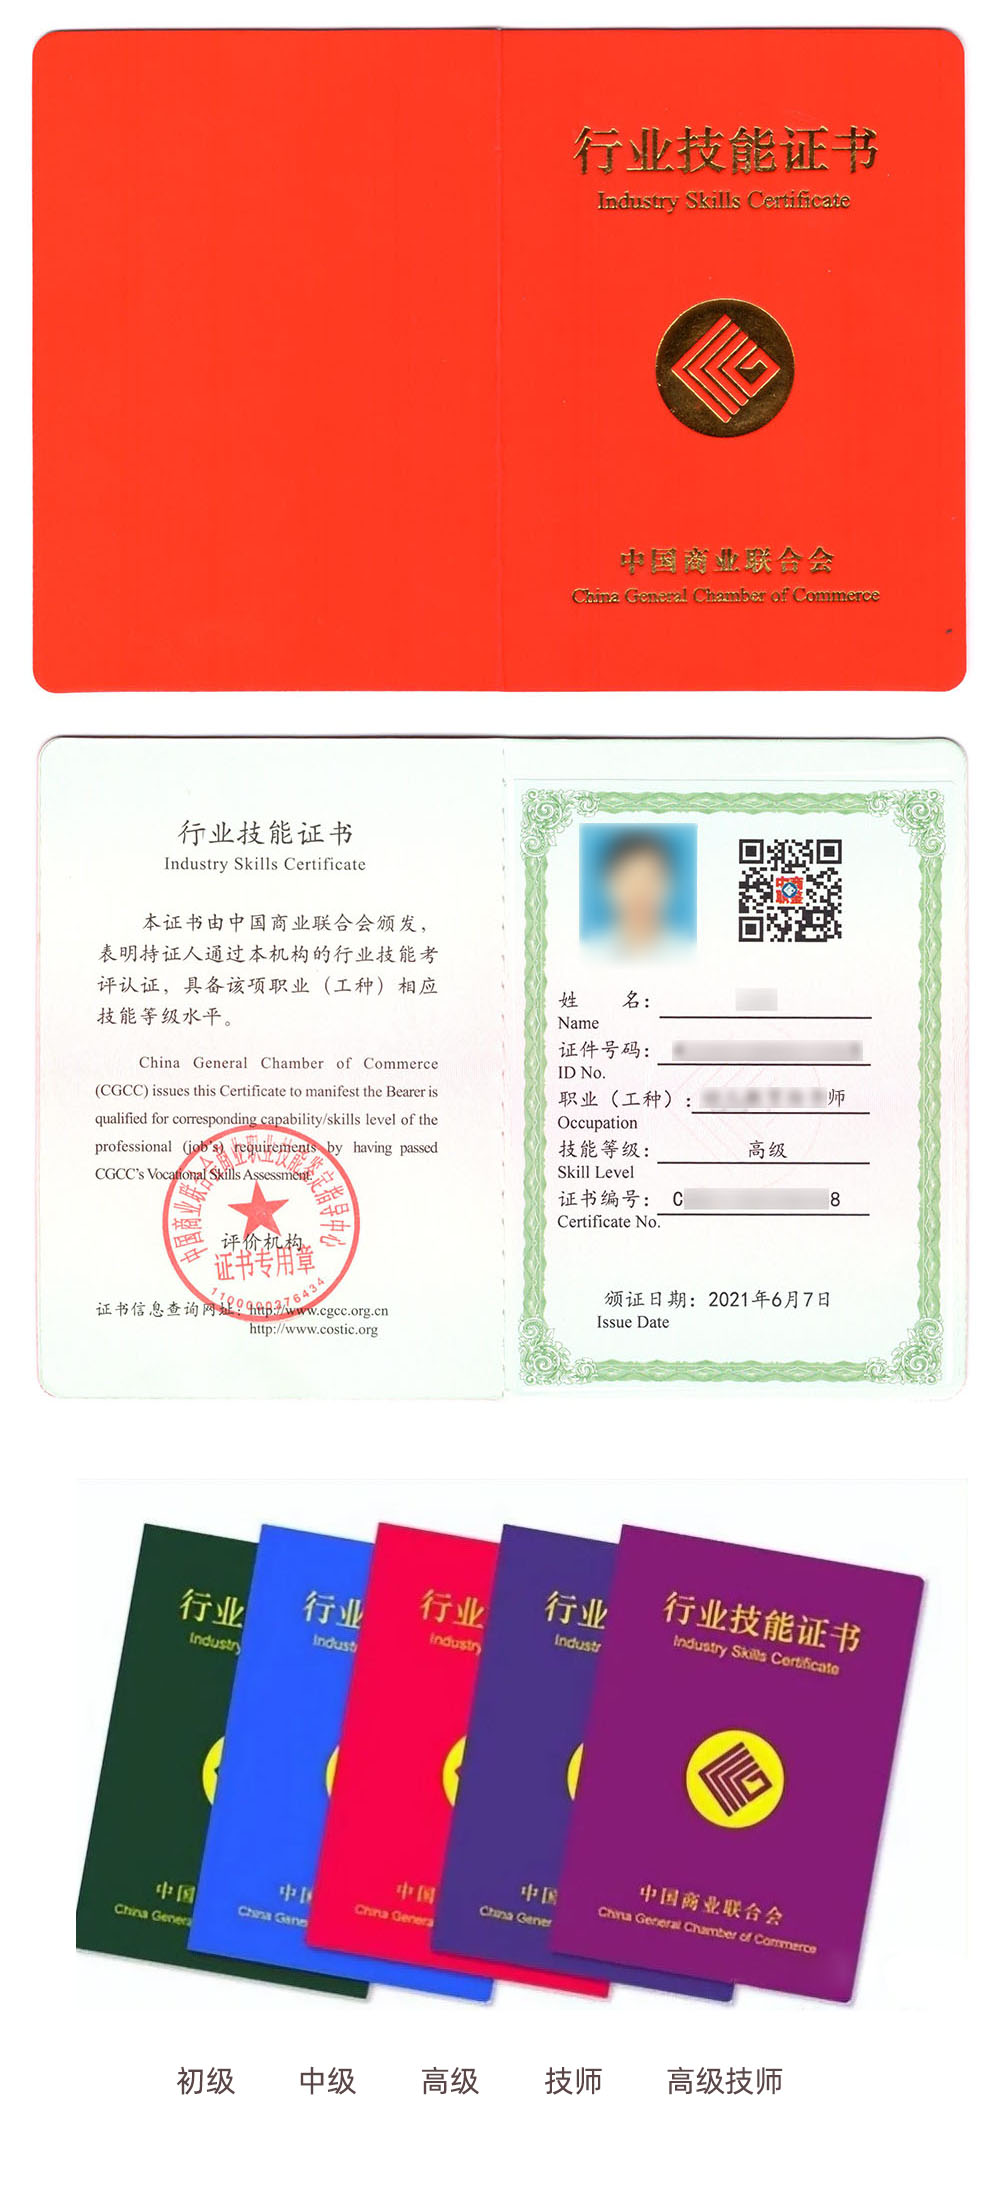 中国商业联合会商业职业技能鉴定中心 行业技能证书 社群运营师证证书样本